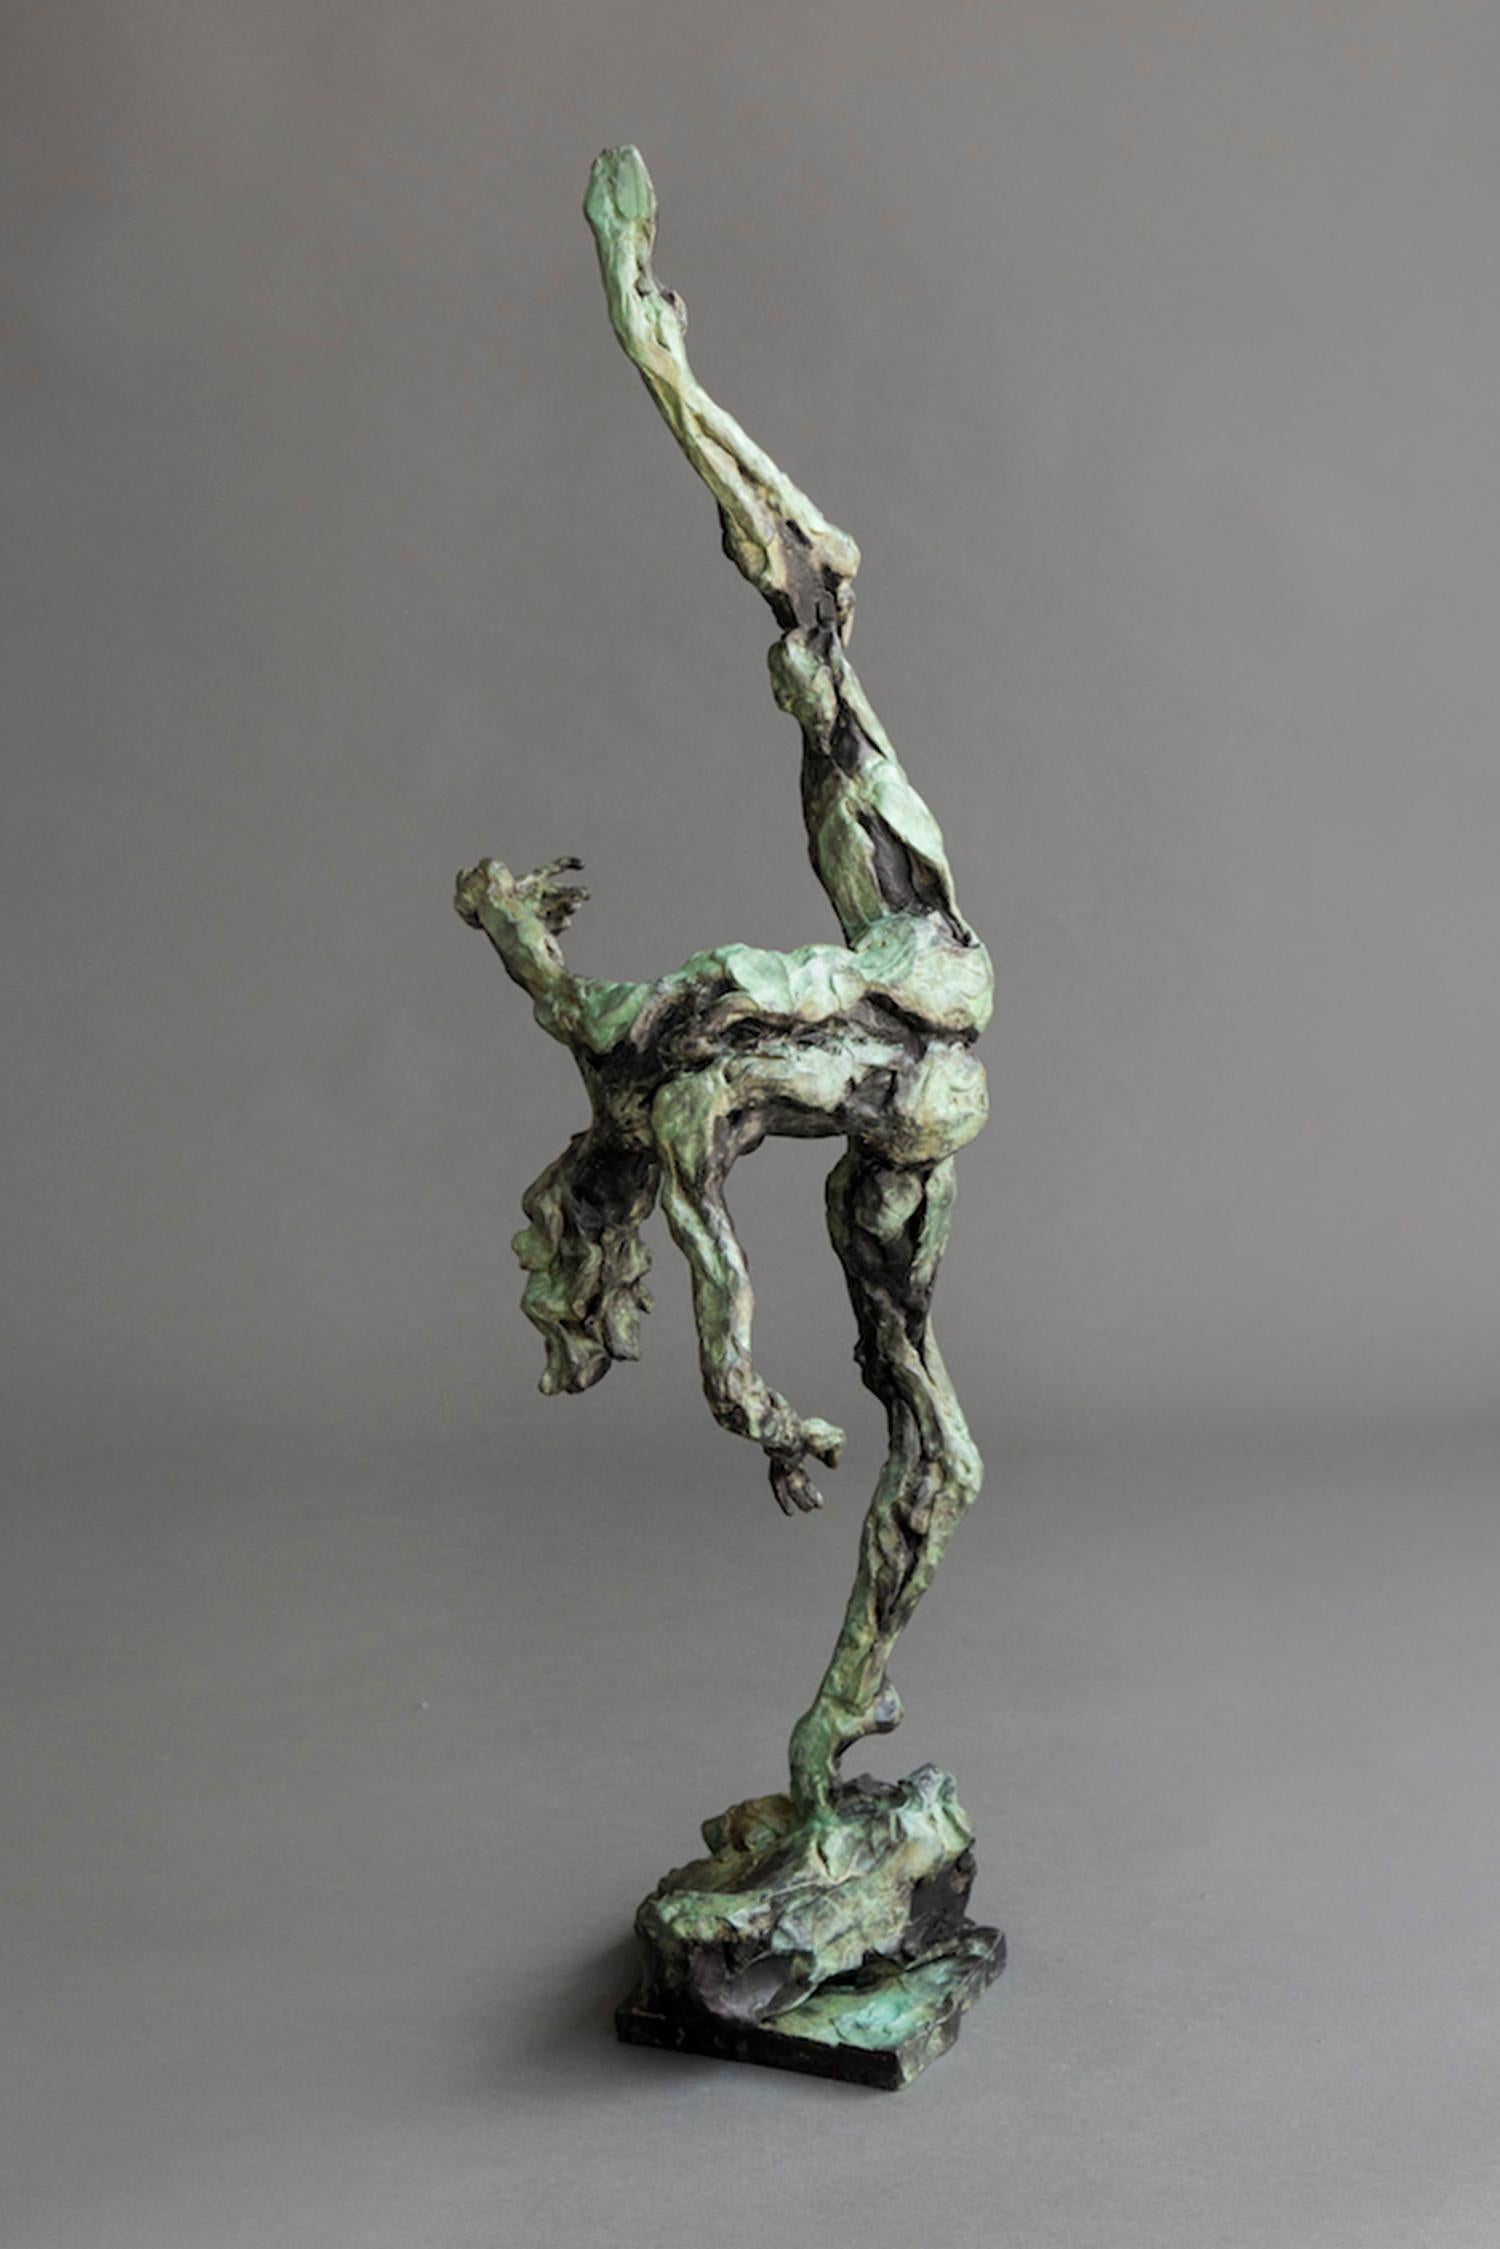 Femme danseuse nue - Sans titre n° 51 1/8 - statuette en bronze patiné représentant une femme nue - Contemporain Sculpture par Richard Tosczak